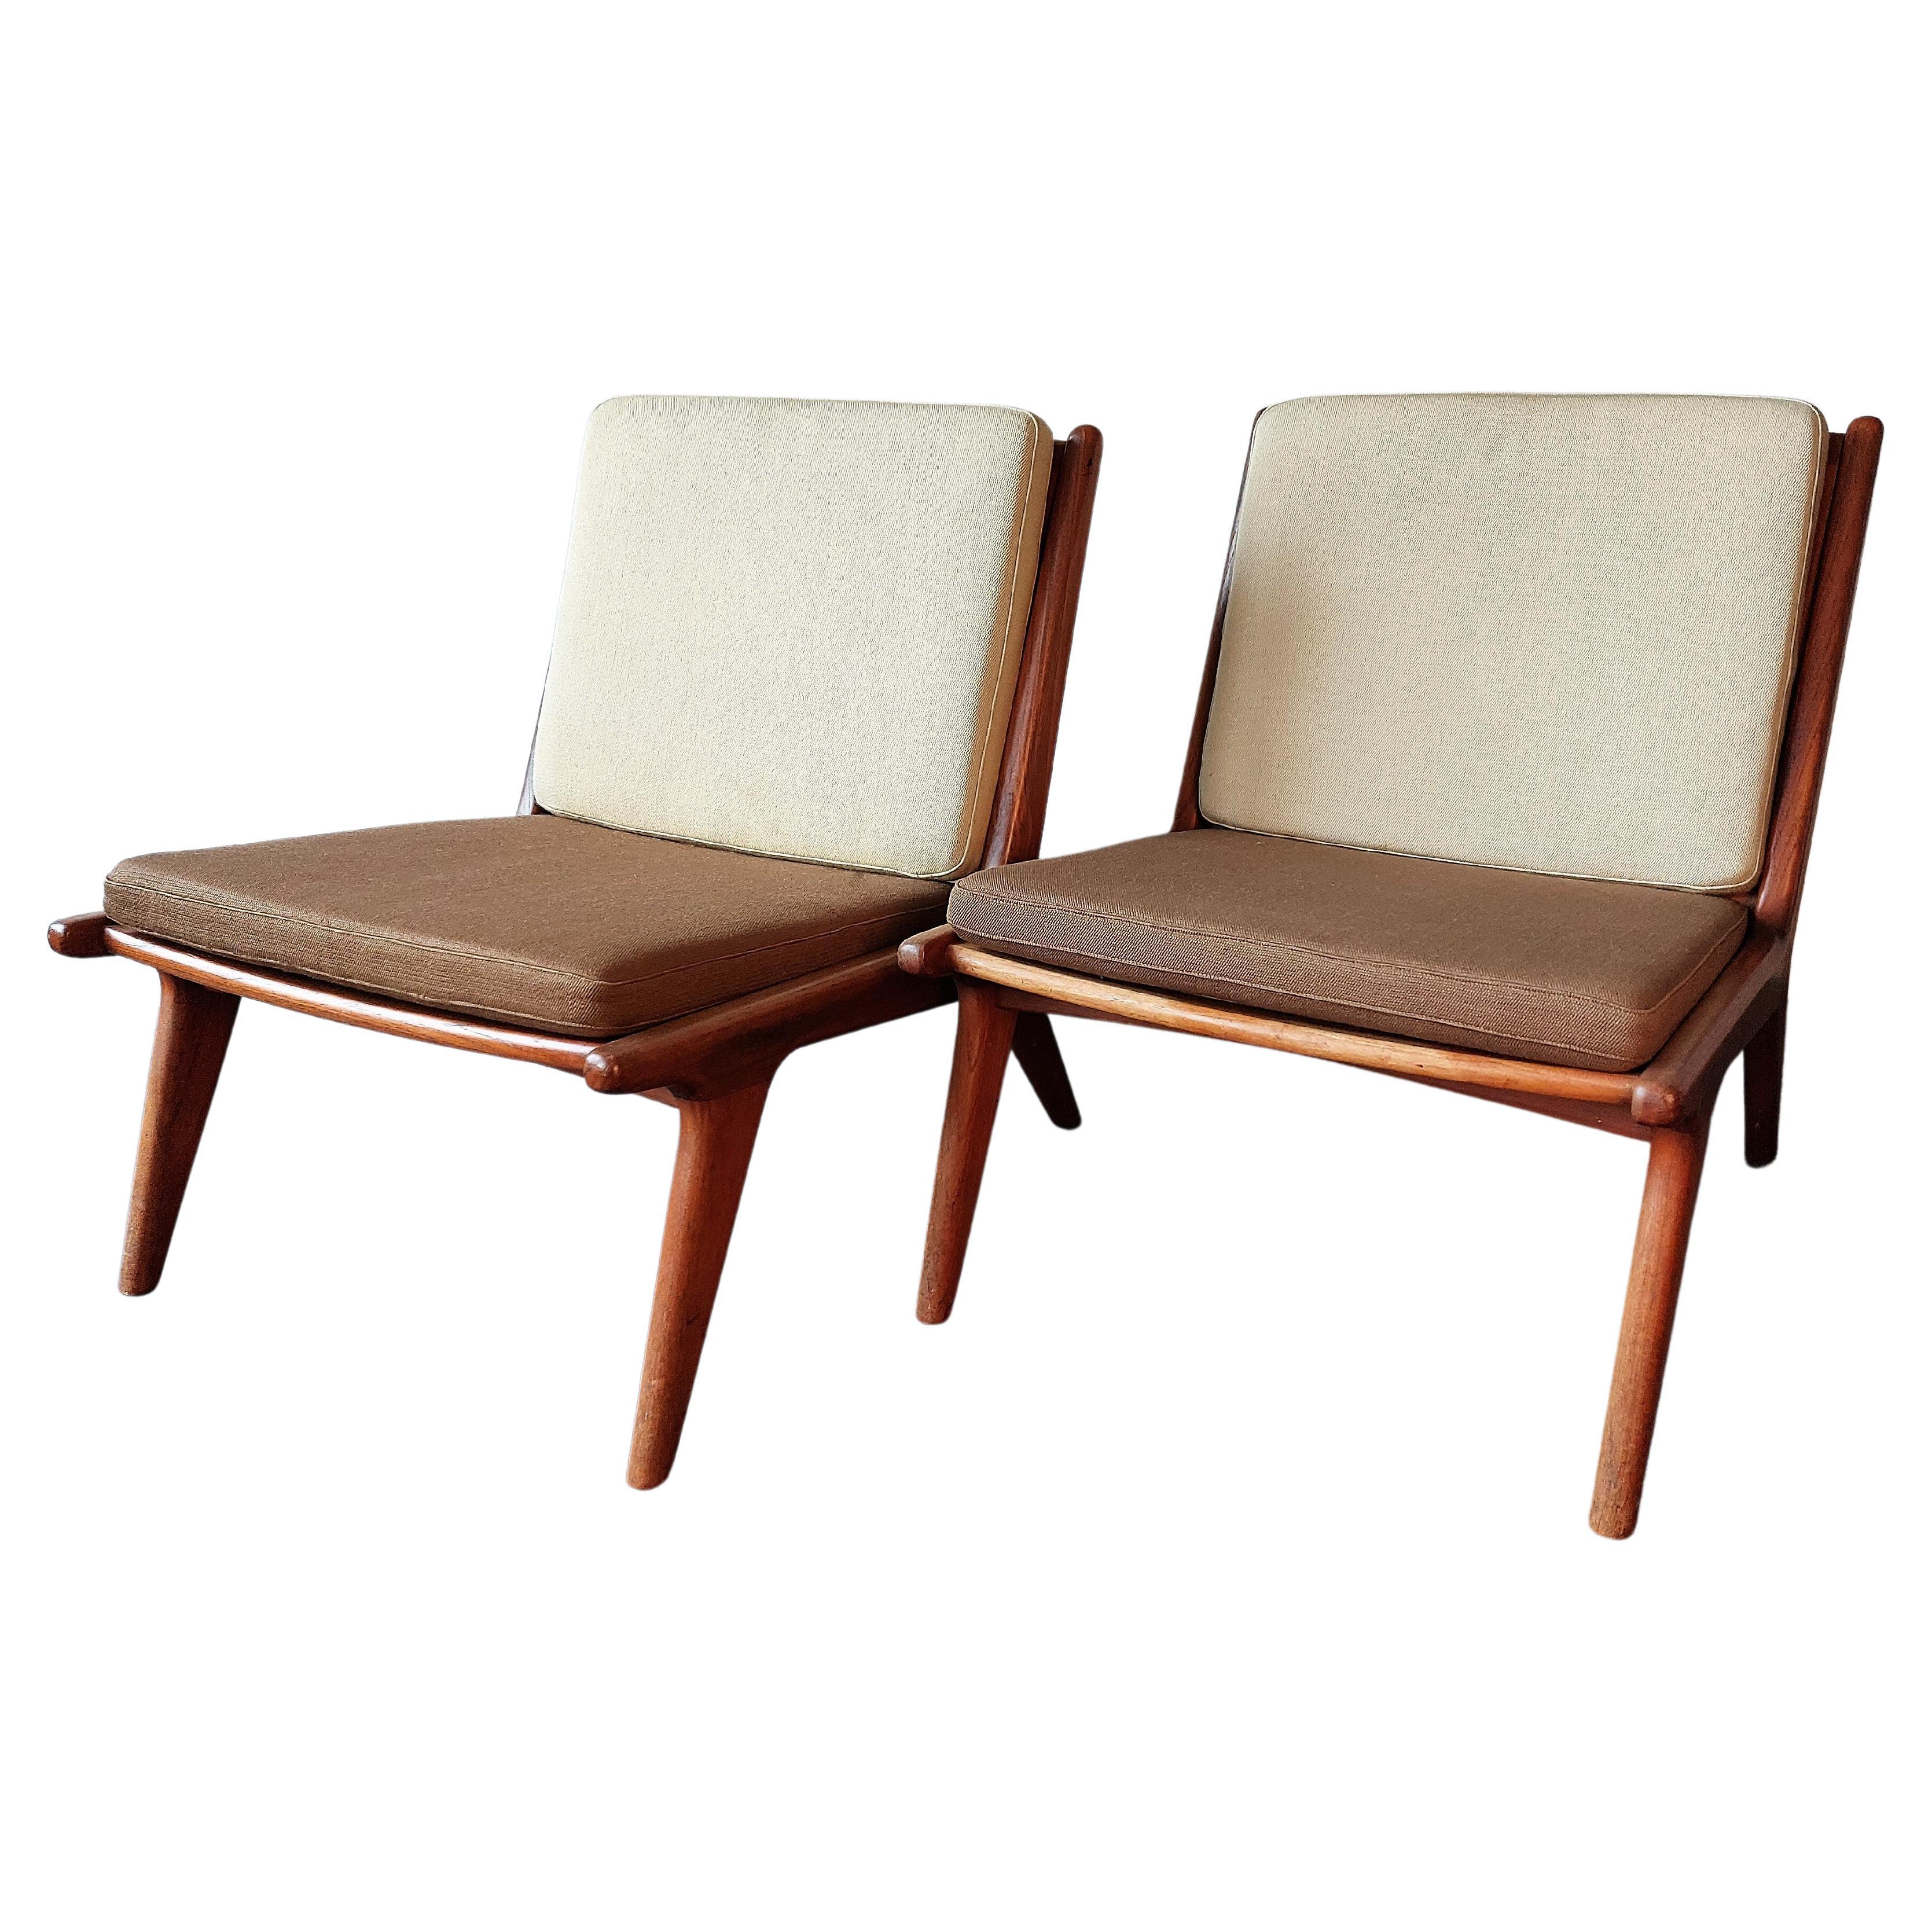 Ein wunderschönes Set aus 2 Vintage-Lounge- oder Pantoffelstühlen, die wahrscheinlich in Dänemark hergestellt wurden. Die Stühle haben ein minimalistisches, handwerklich gefertigtes Holzgestell, das sich in einem guten und soliden Zustand befindet.